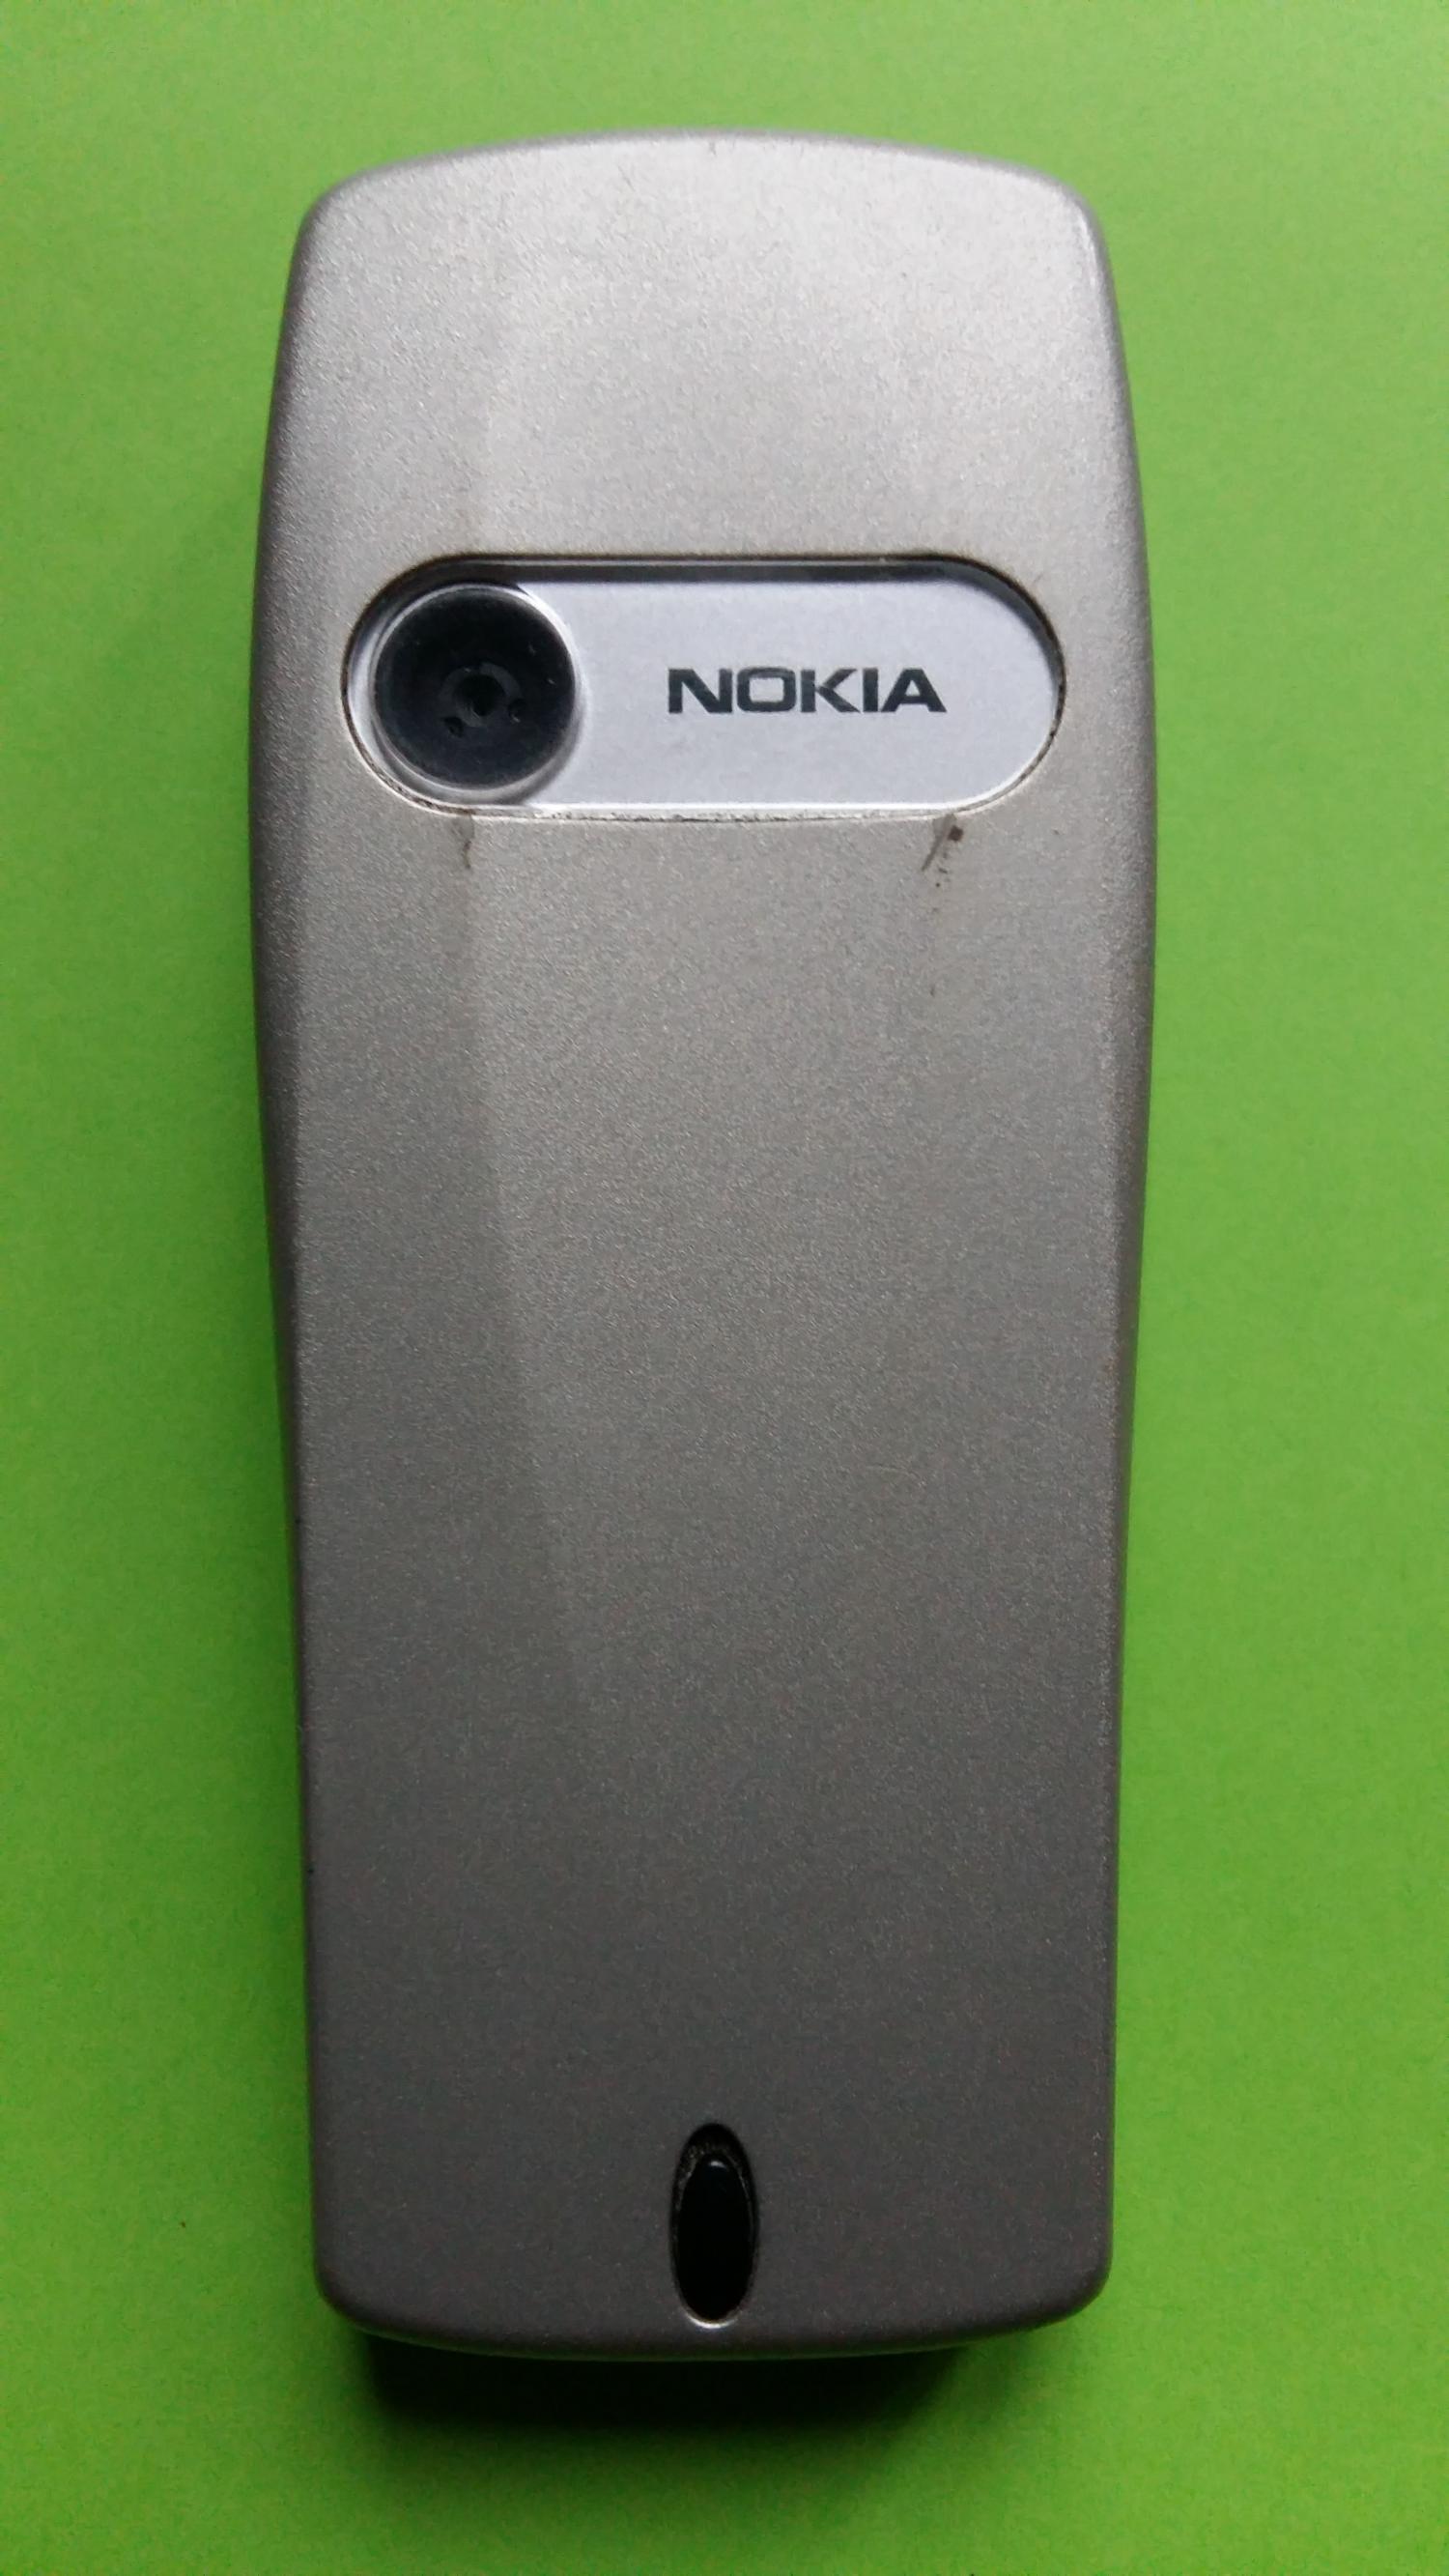 image-7336756-Nokia 6610i (1)2.jpg